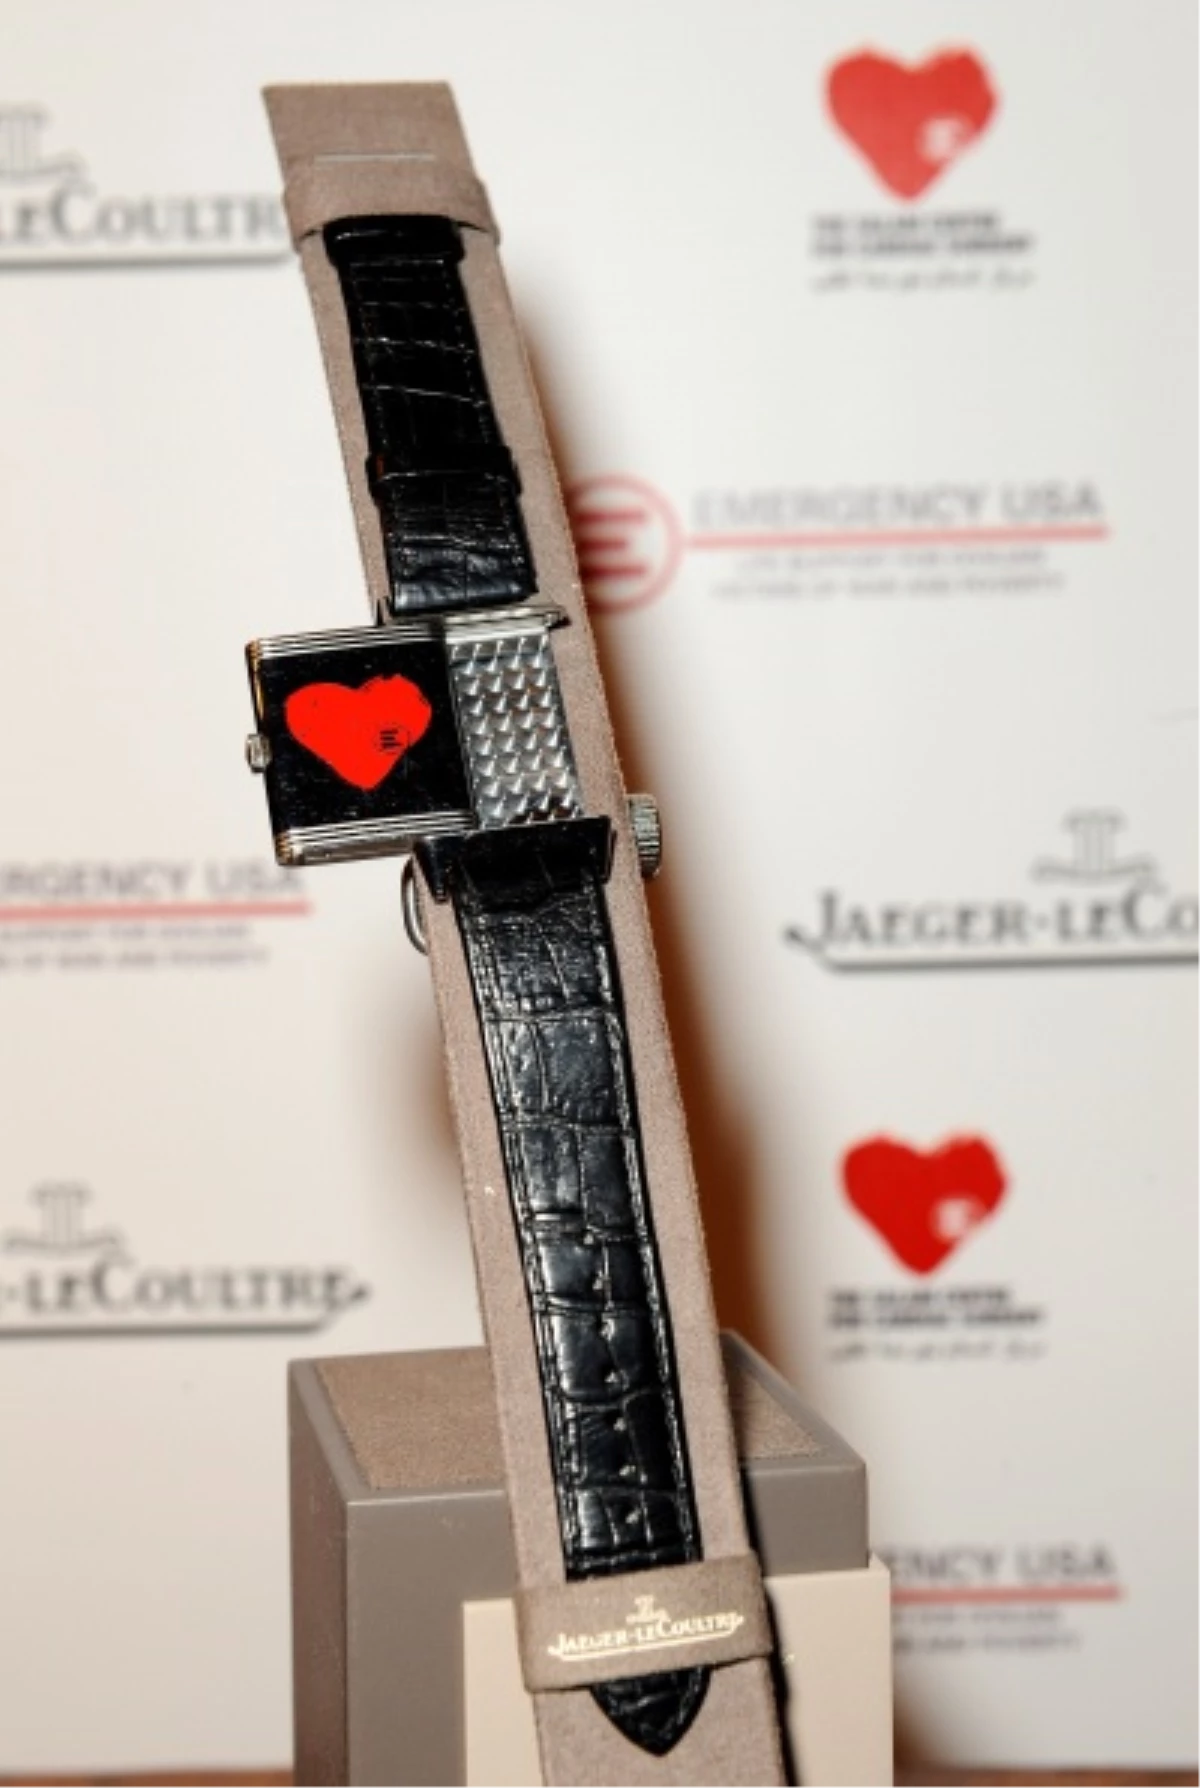 Jaeger-LeCoultre "Açık Kalp - Open Heart" Belgeselini Destekliyor